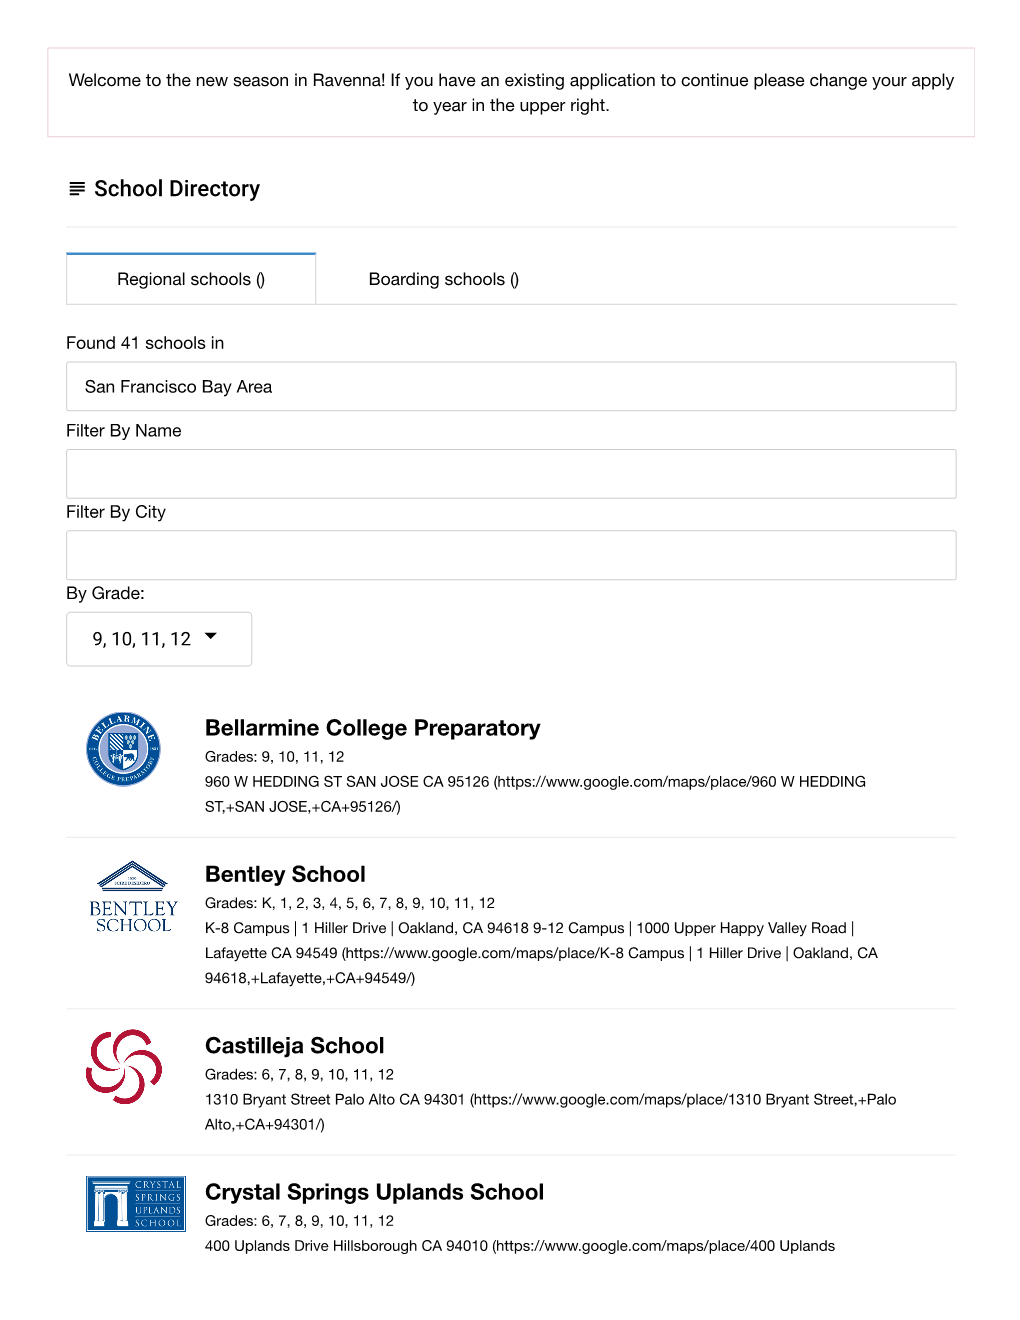 School Directory Bellarmine College Preparatory Bentley School